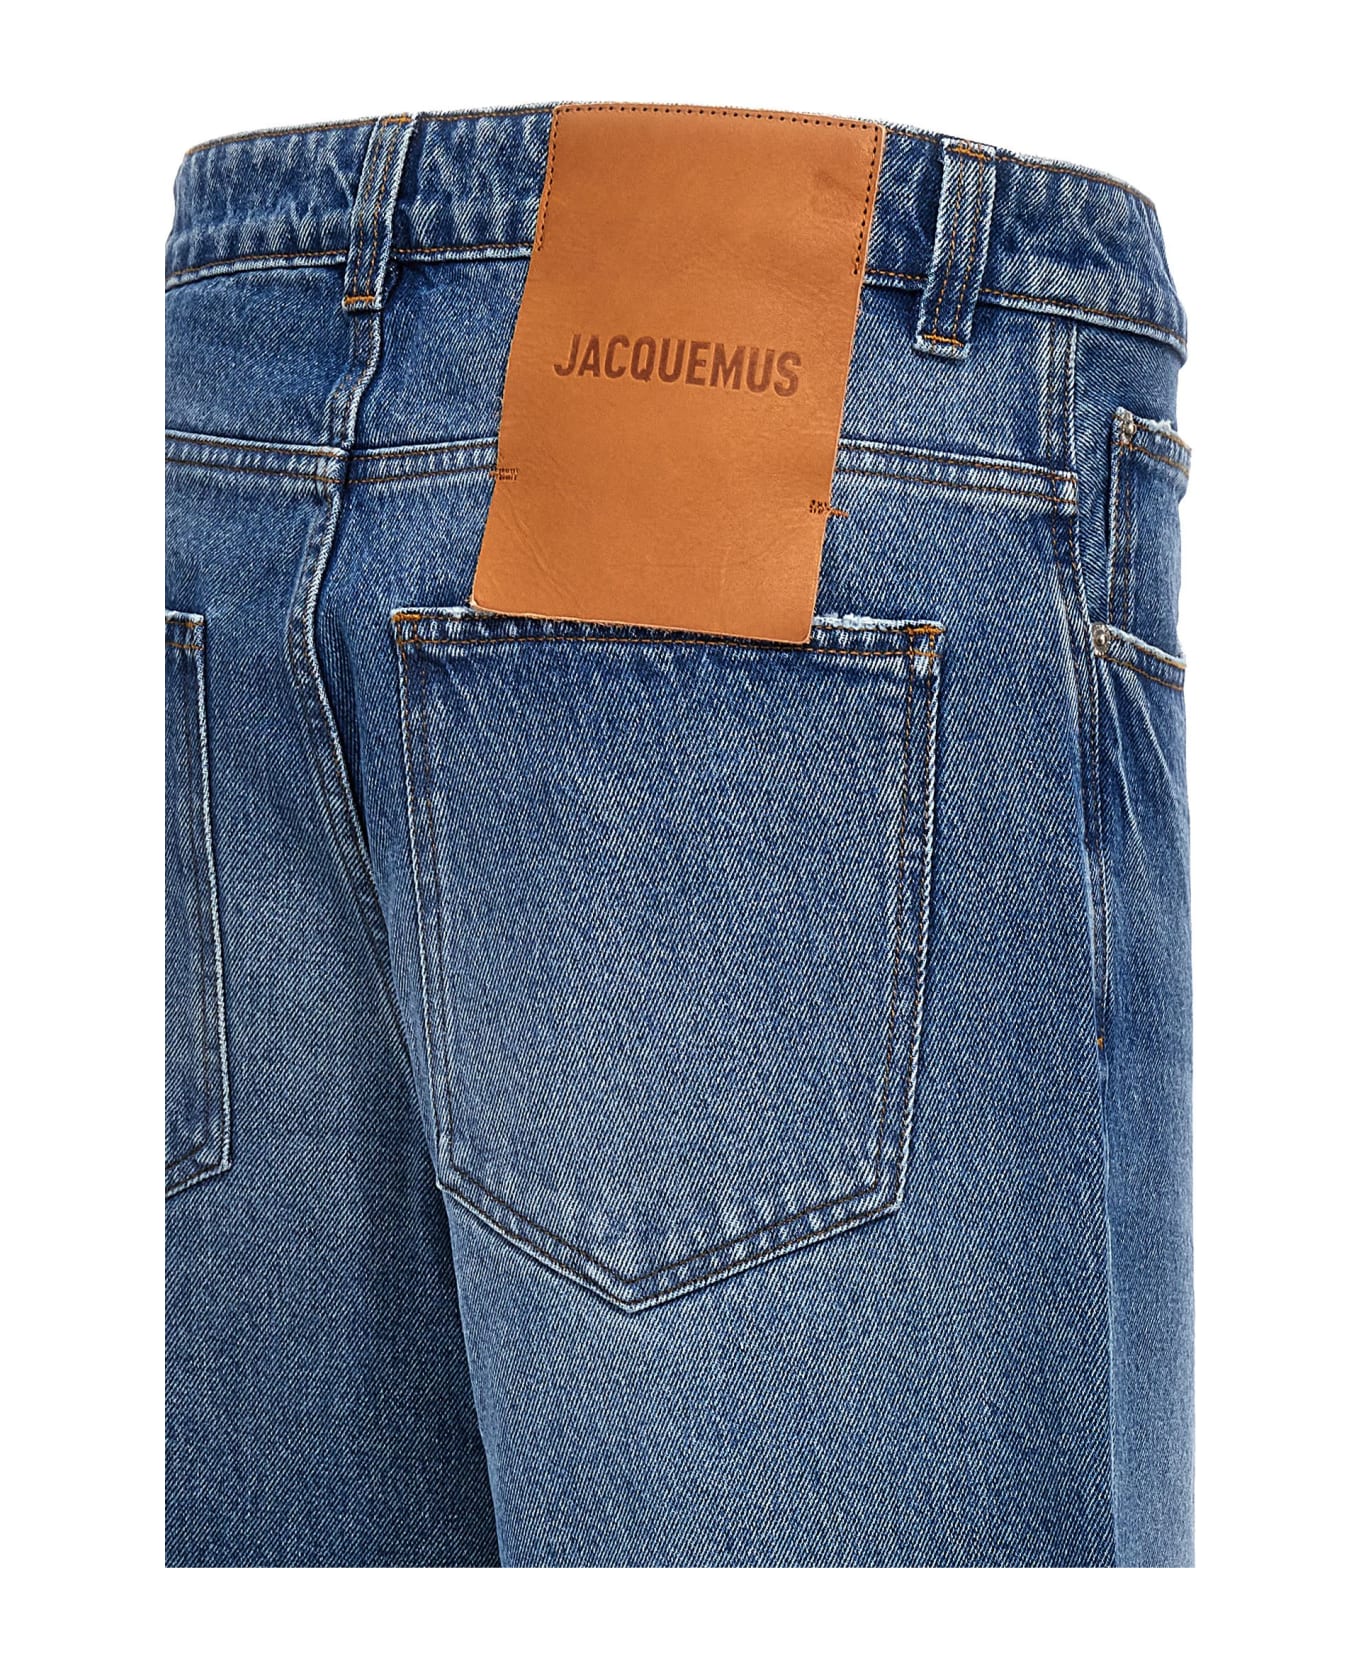 Jacquemus 'le De Nîmes Large' Jeans - Blue デニム